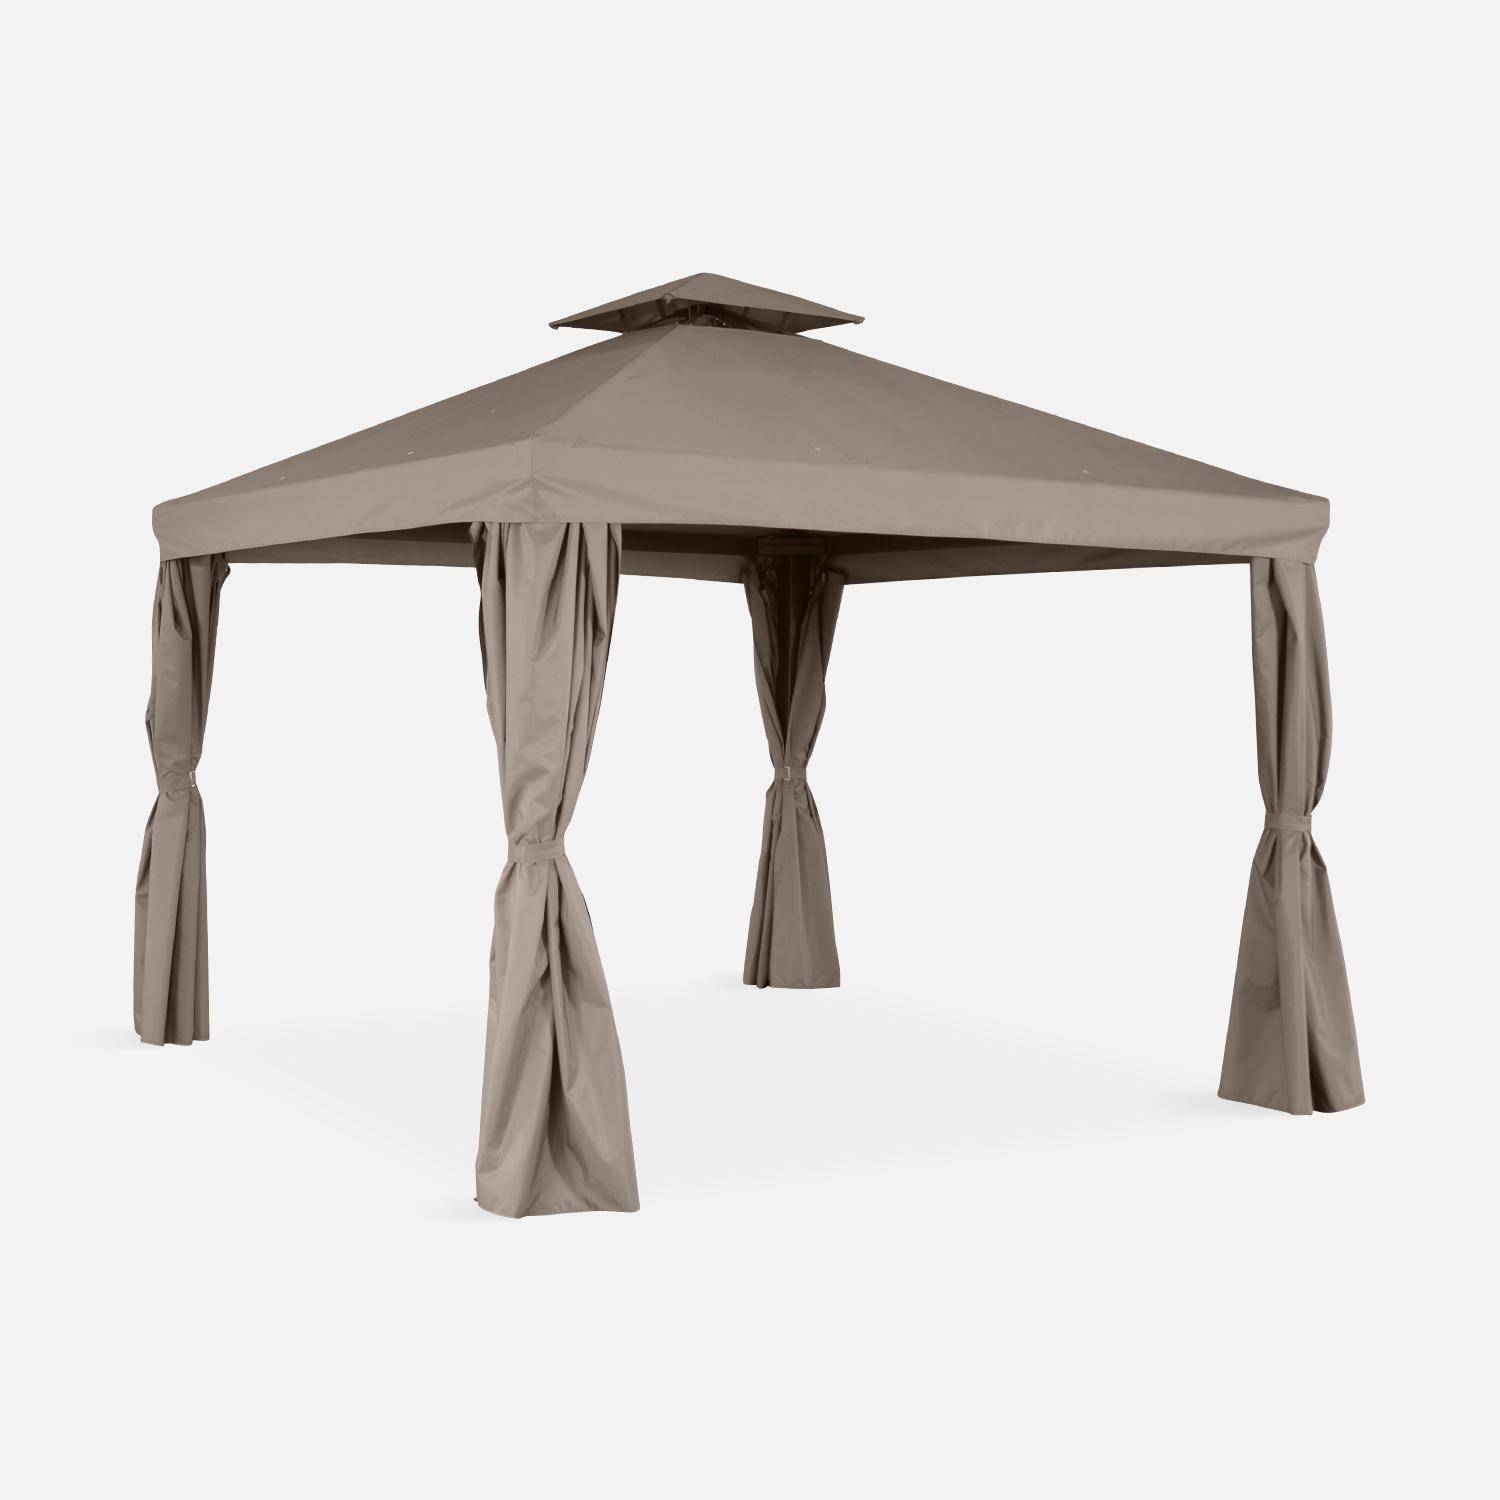 Pérgola de aluminio - Divodorum 3x3m - Lona taupe - Cenador con cortinas, estructura de aluminio Photo1